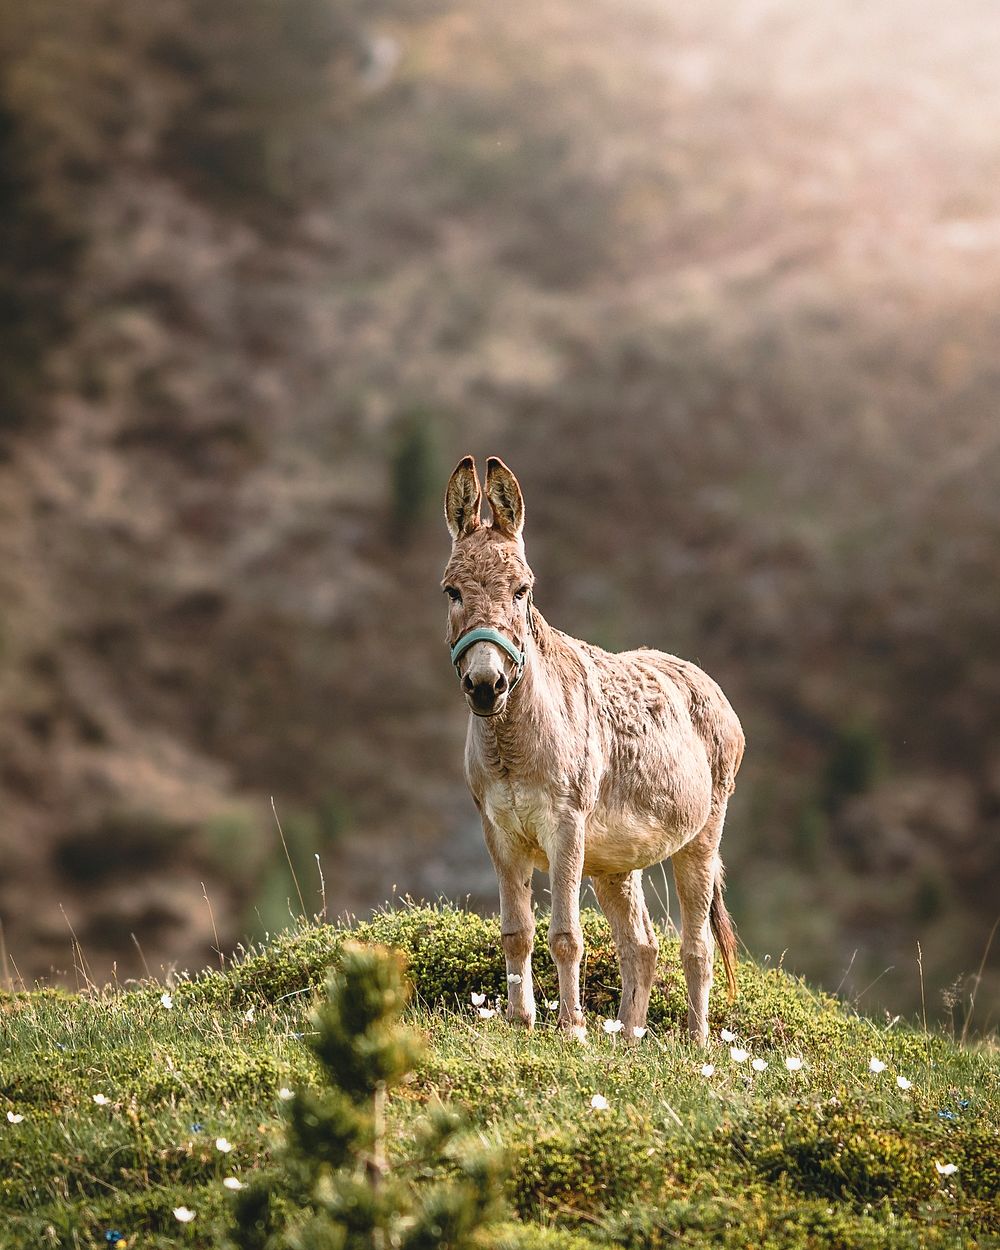 Free donkey on meadow image, public domain animal CC0 photo.